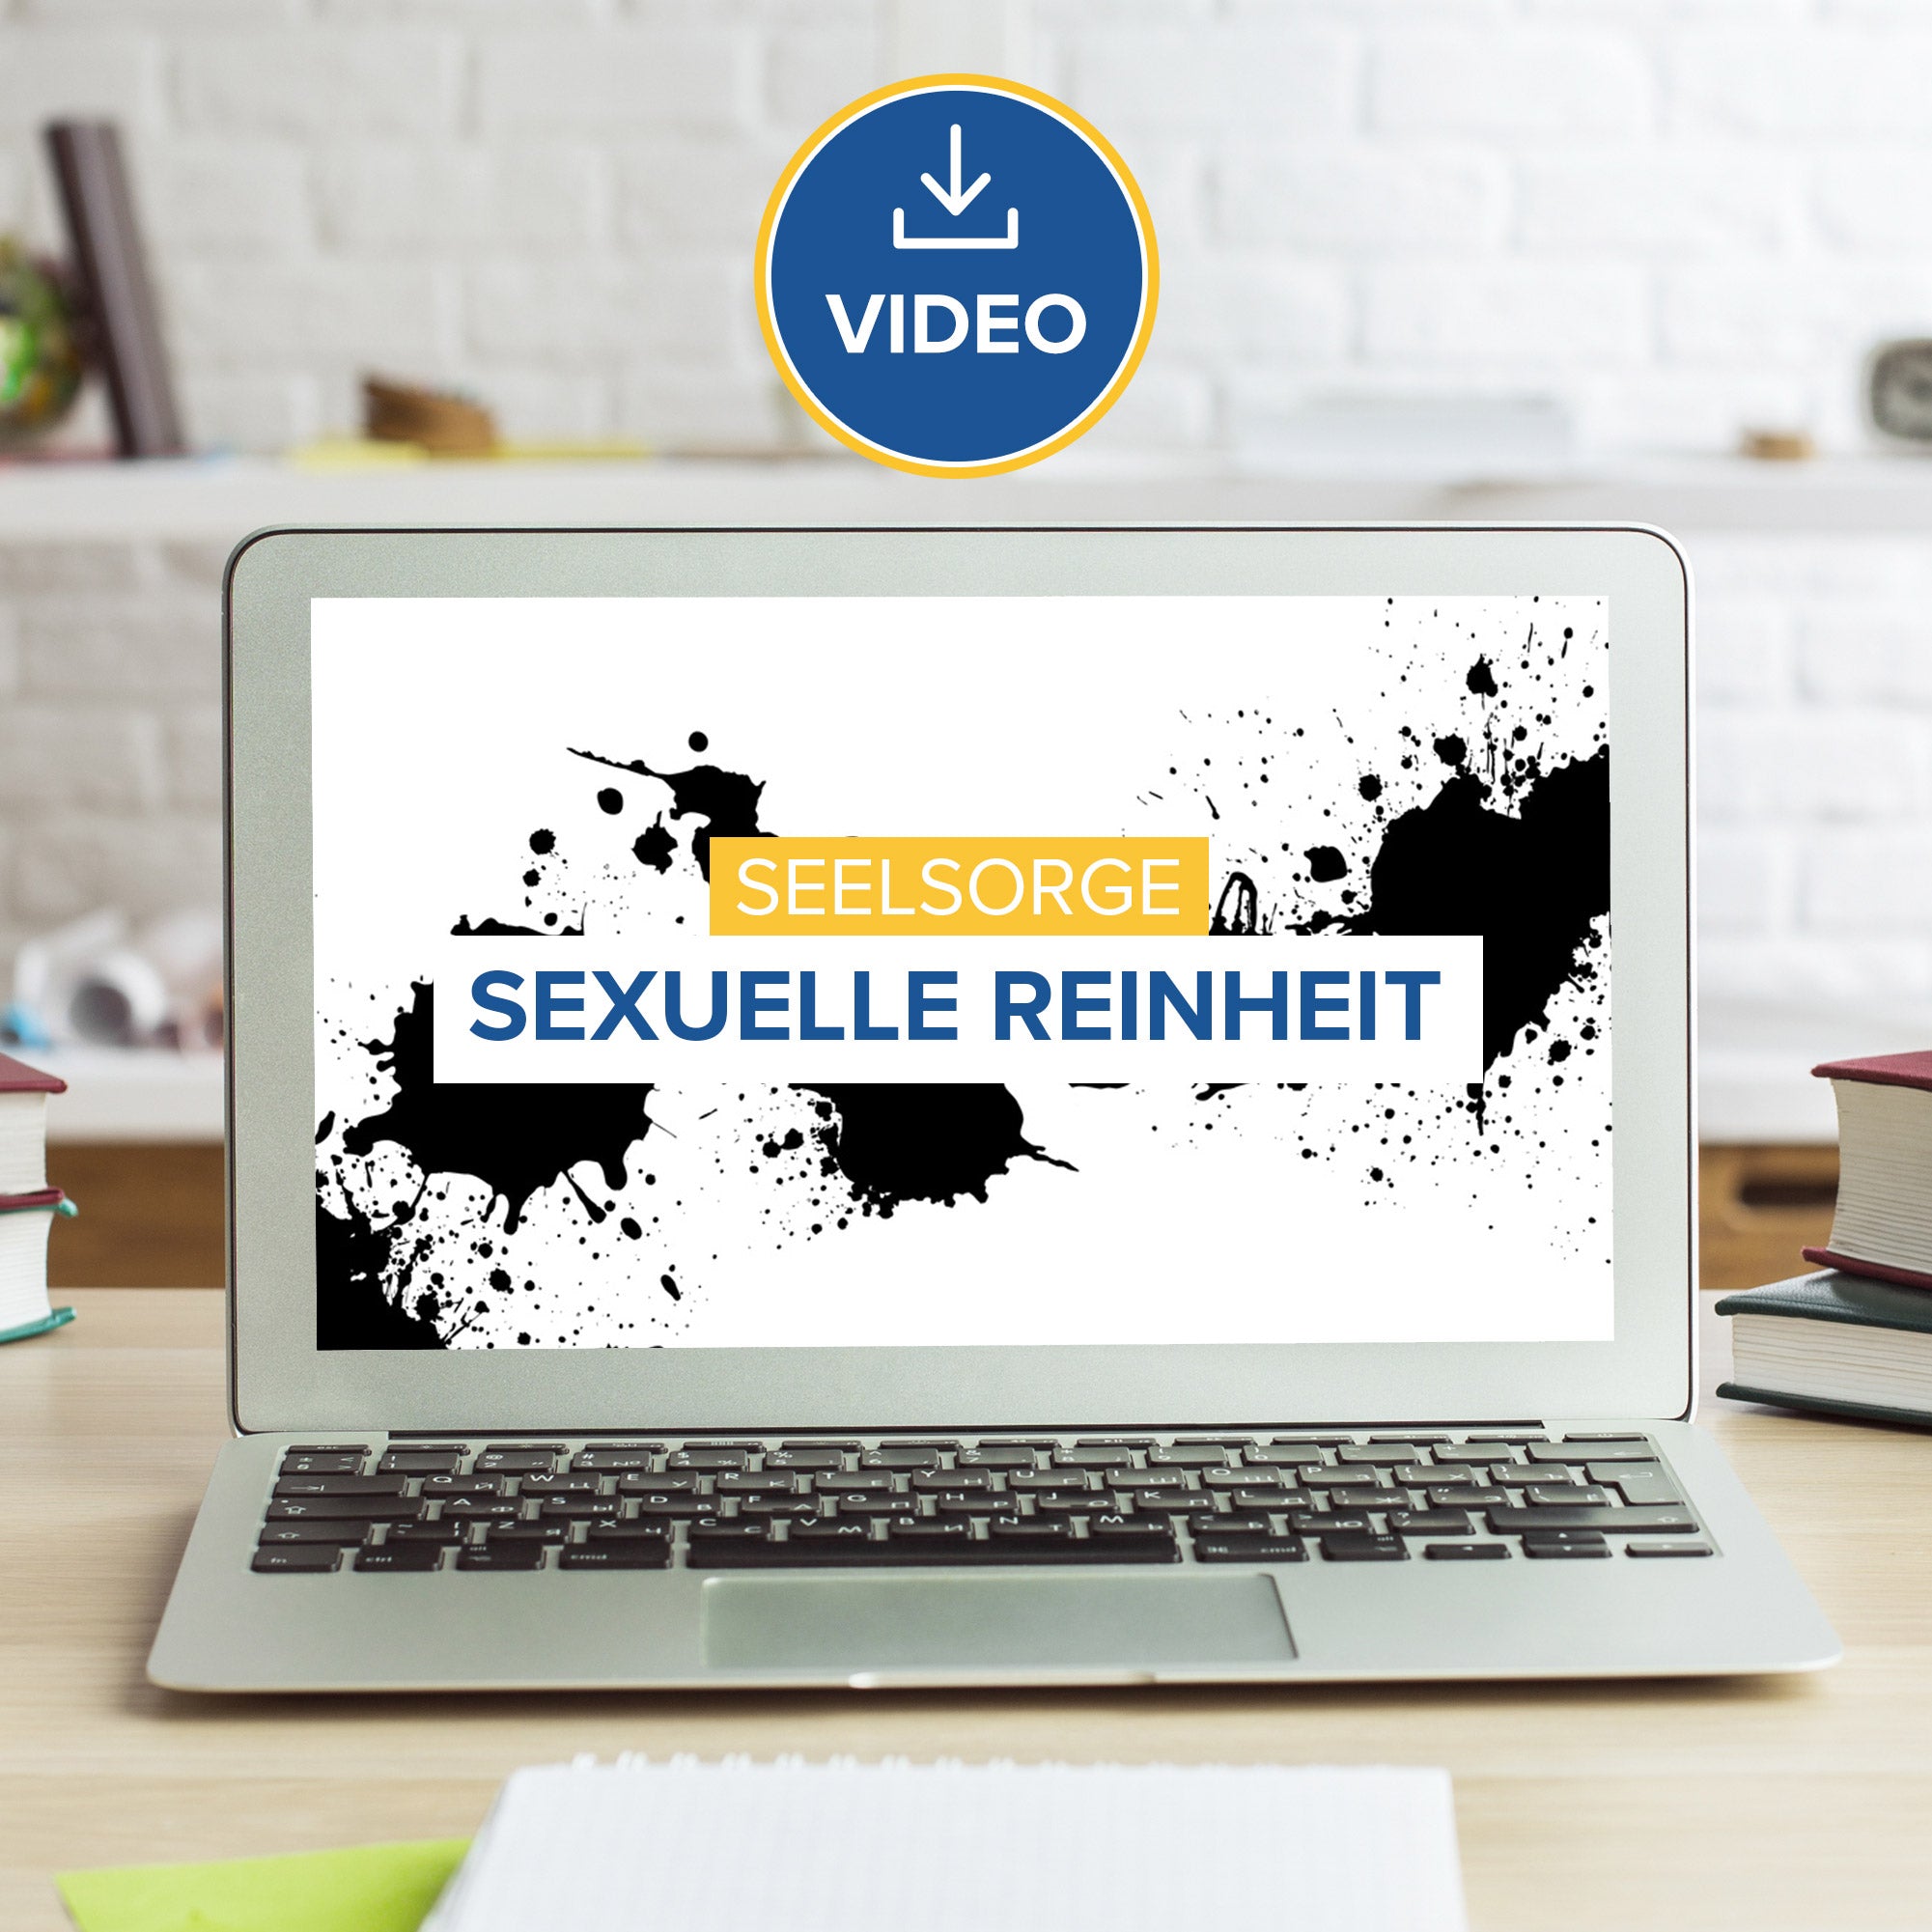 Sexuelle Reinheit (Video Download)